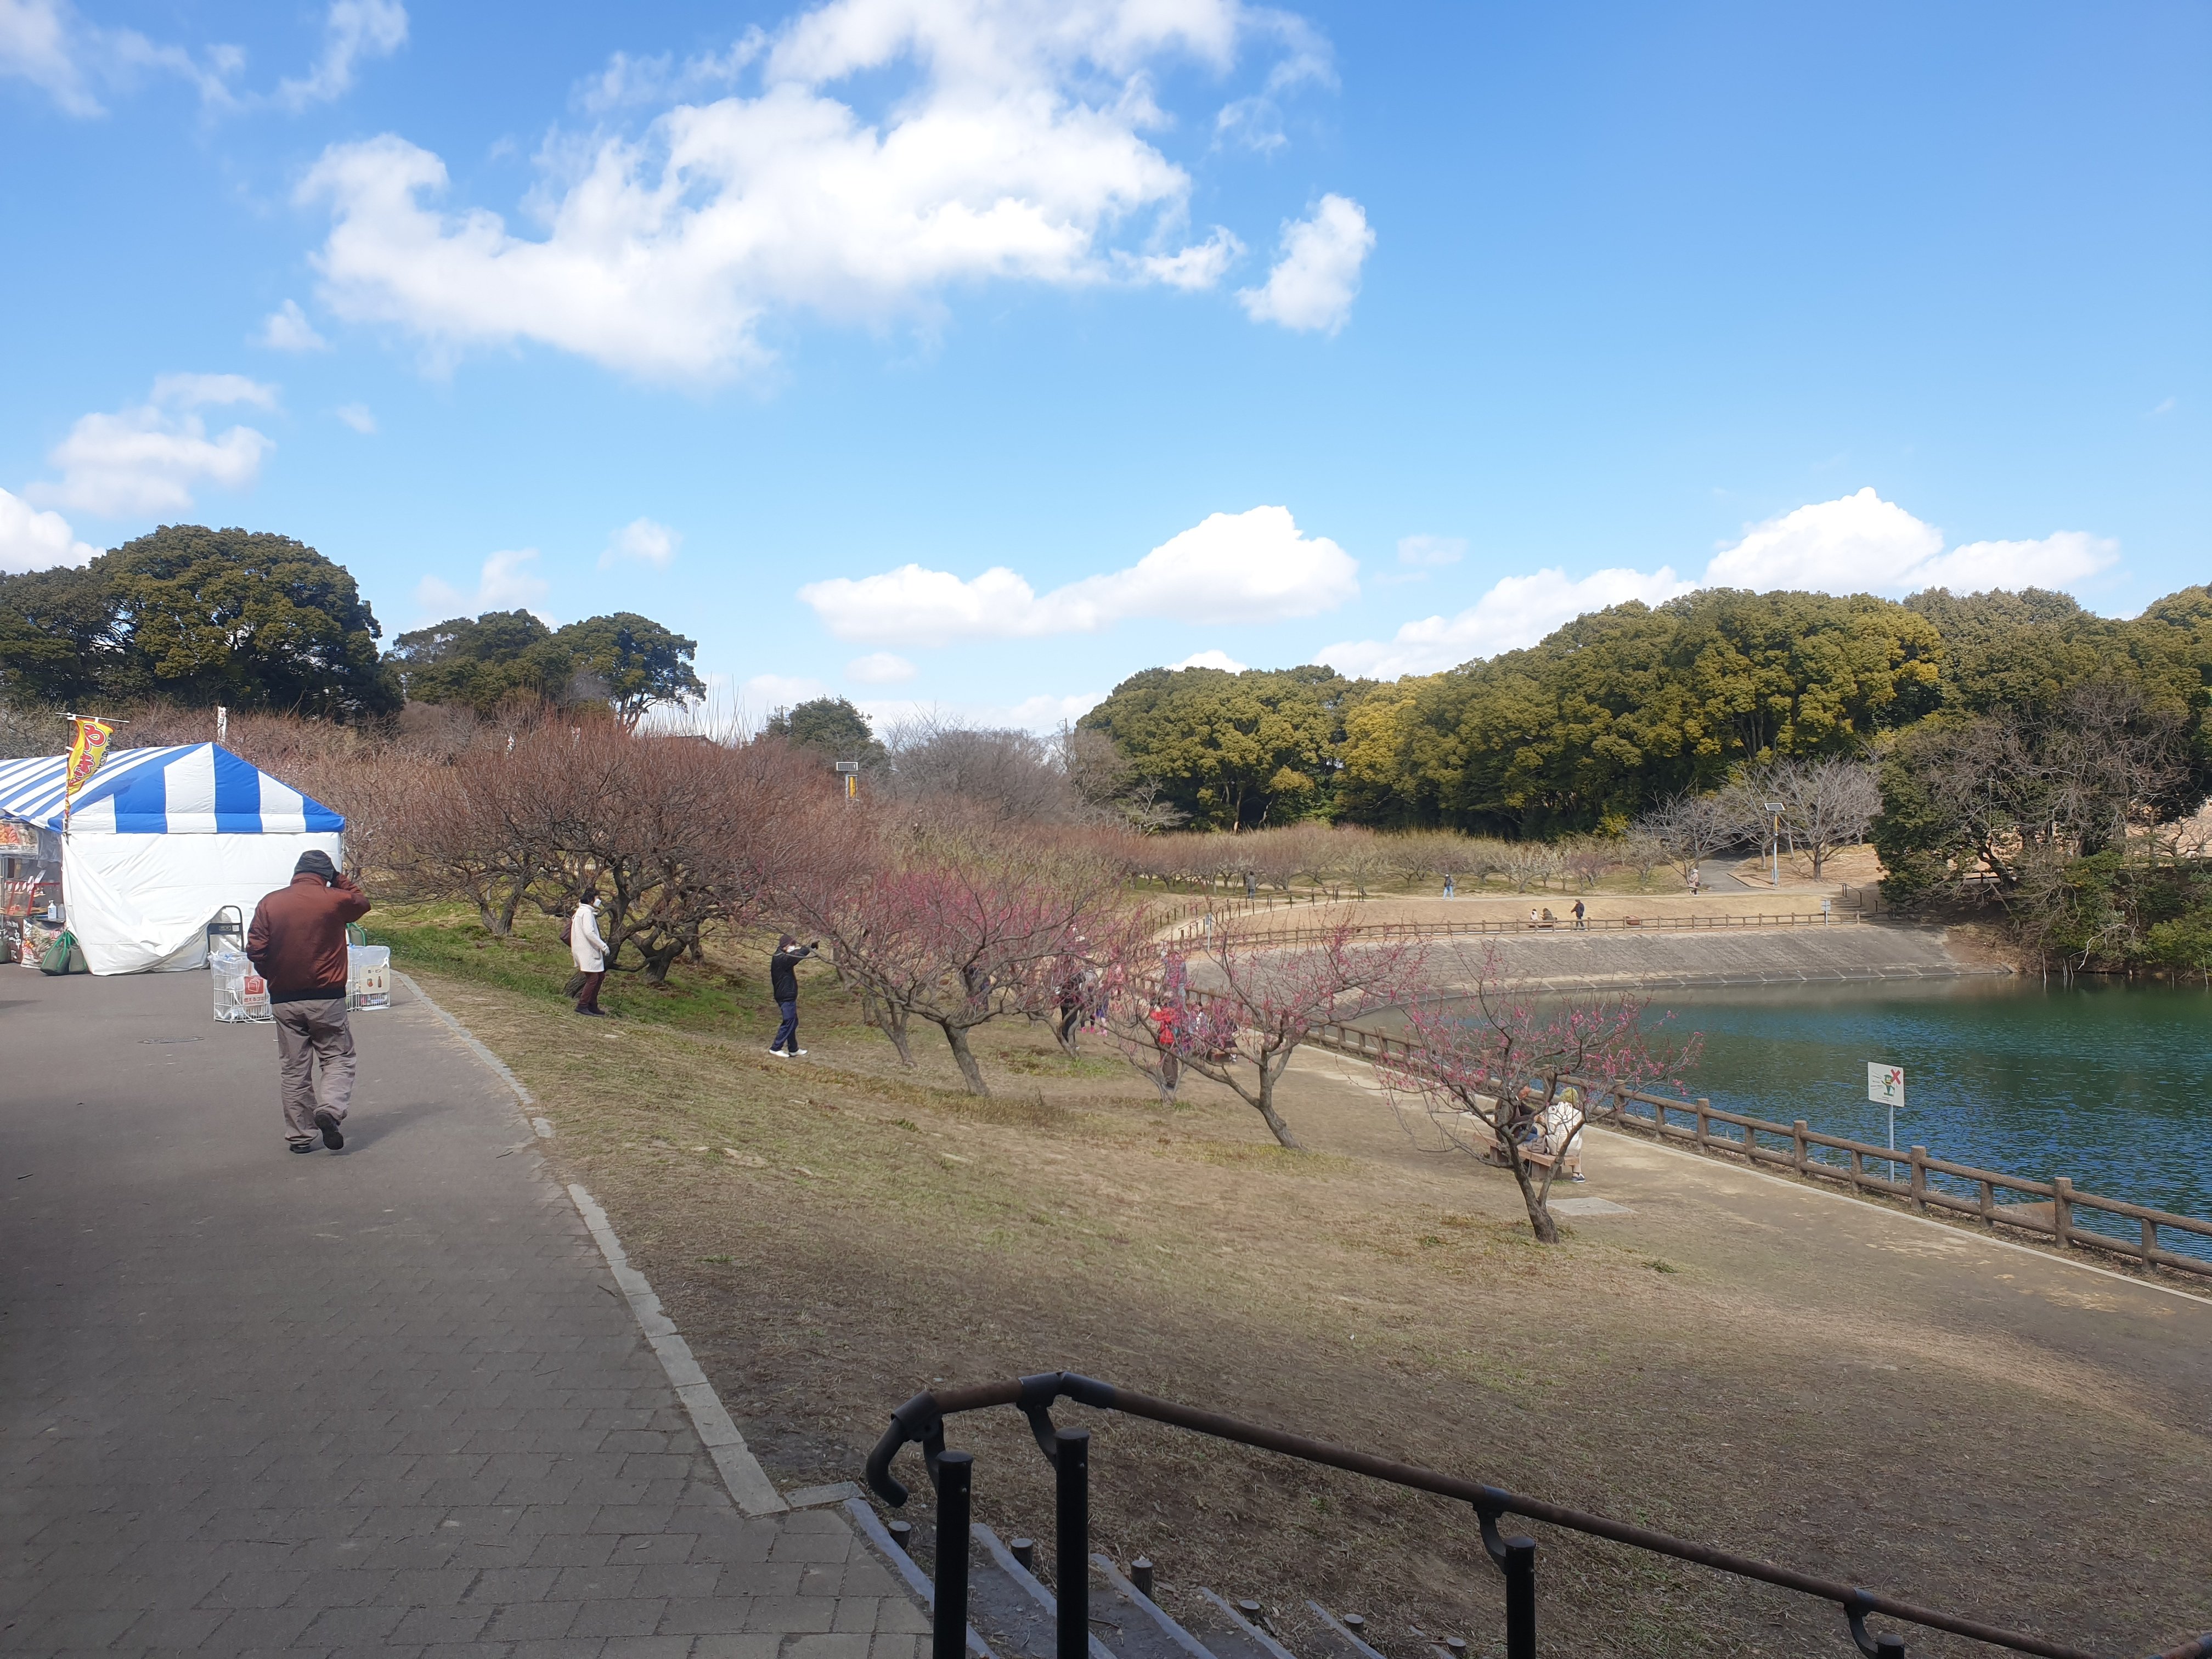 佐布里池には、愛知県で最大の本数と種類を誇る梅林があり、とても沢山の梅が咲き誇りますが、この日はまだまだでした。